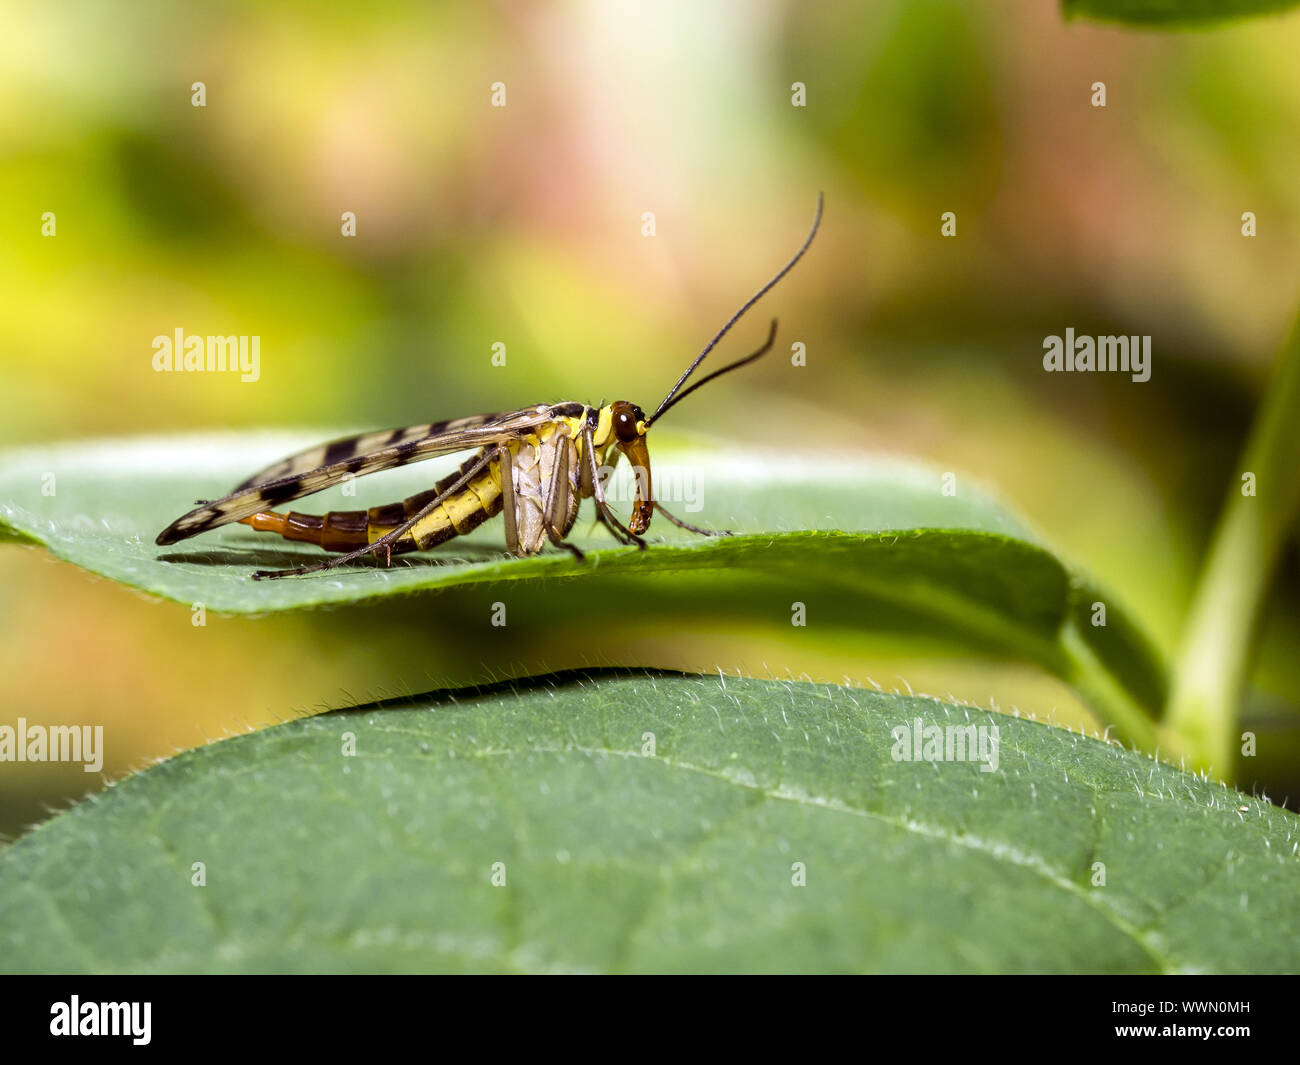 common scorpionfly Stock Photo